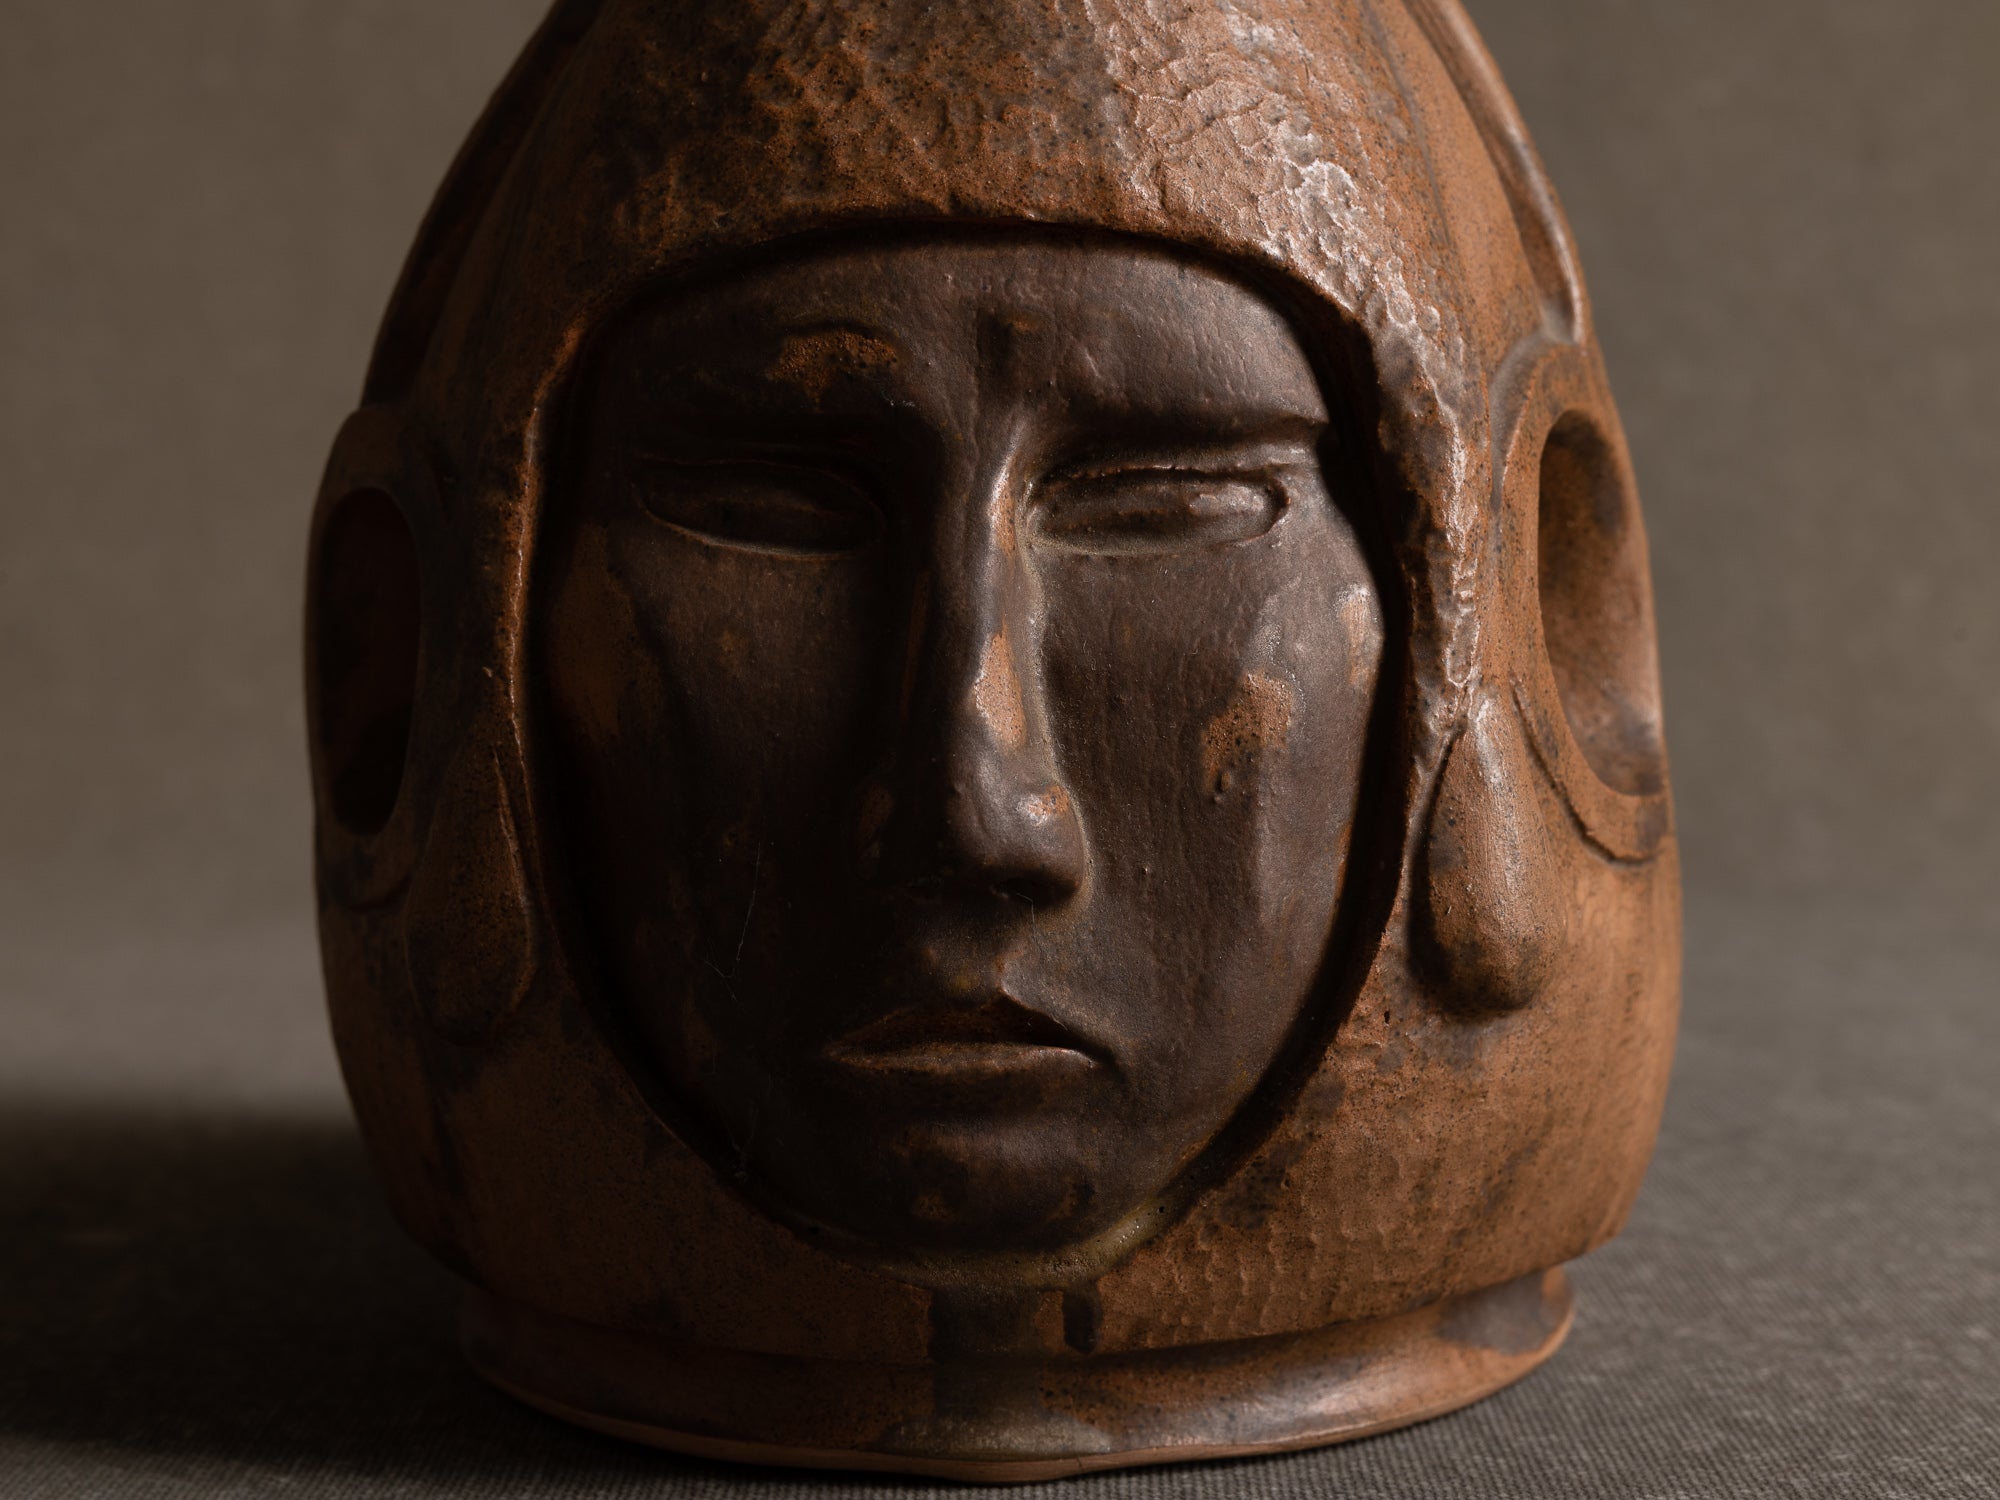 Sculpture "tête humaine" en grès, France (années 1980)..Sculpture "human head" in stoneware, France (1980s)